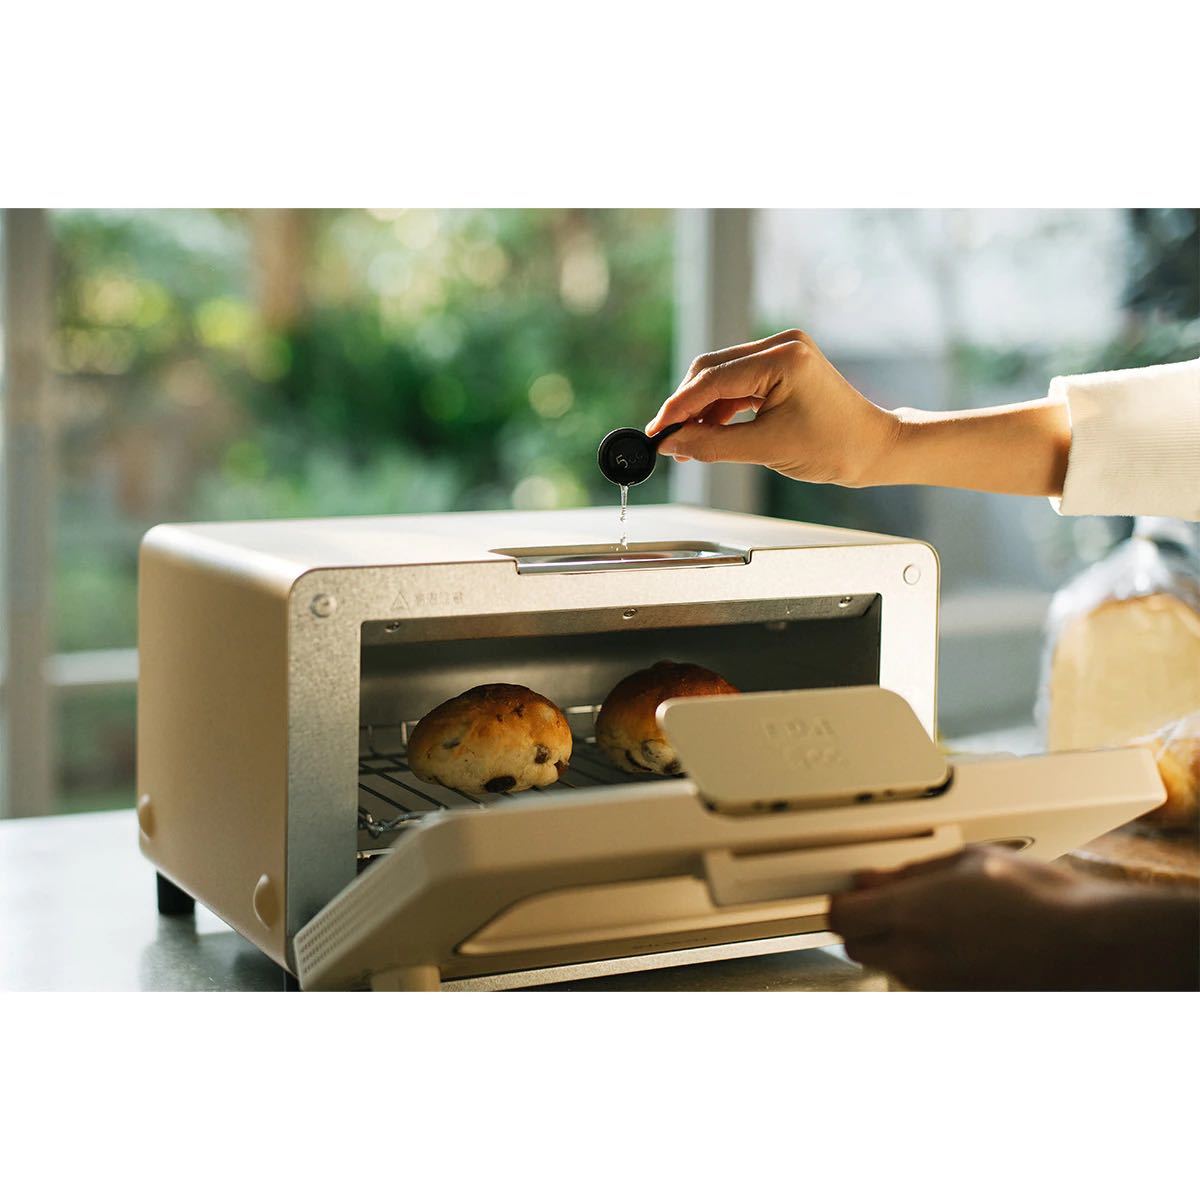 BALMUDA The Toaster(バルミューダ ザ トースター) [ベージュ] K05A BG